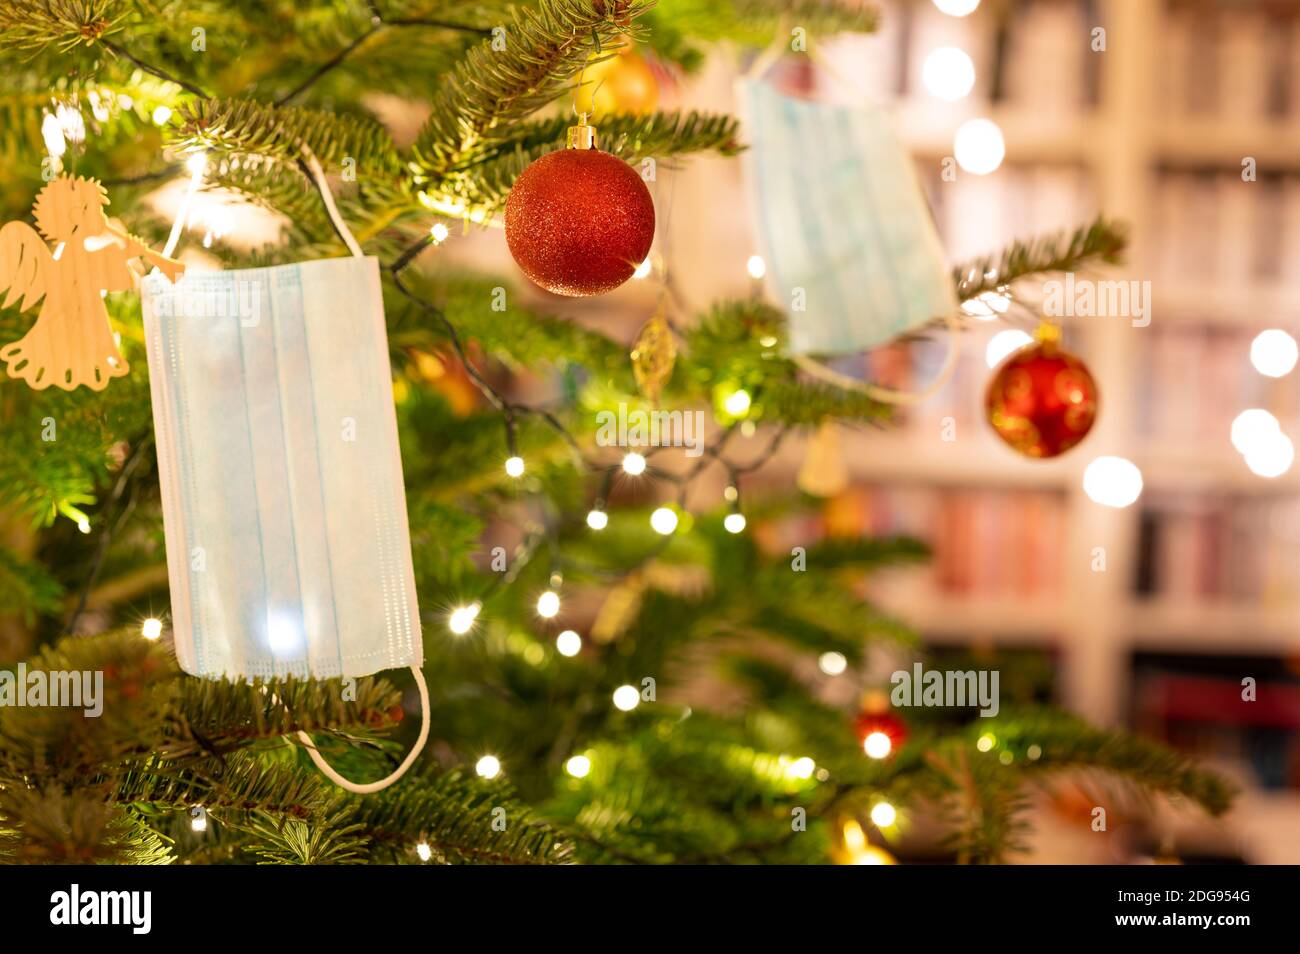 Gesichtsmasken hängen in einem schönen Weihnachtsbaum. Symbol für Weihnachtsfeiern während der Corona-Pandemie. Stockfoto